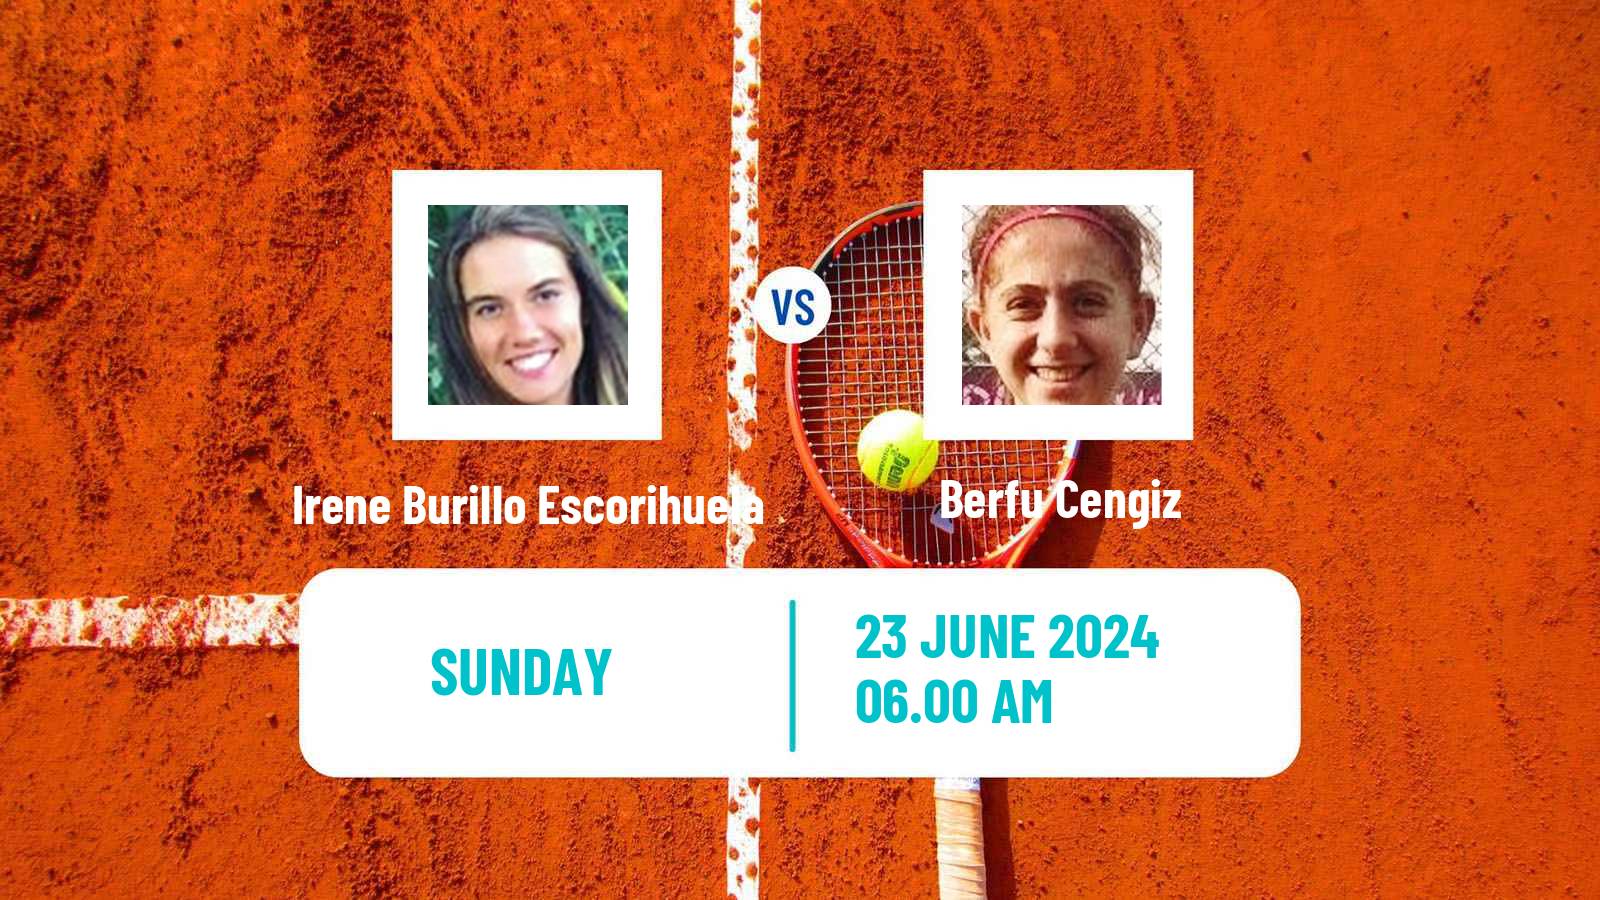 Tennis ITF W50 Ystad Women Irene Burillo Escorihuela - Berfu Cengiz